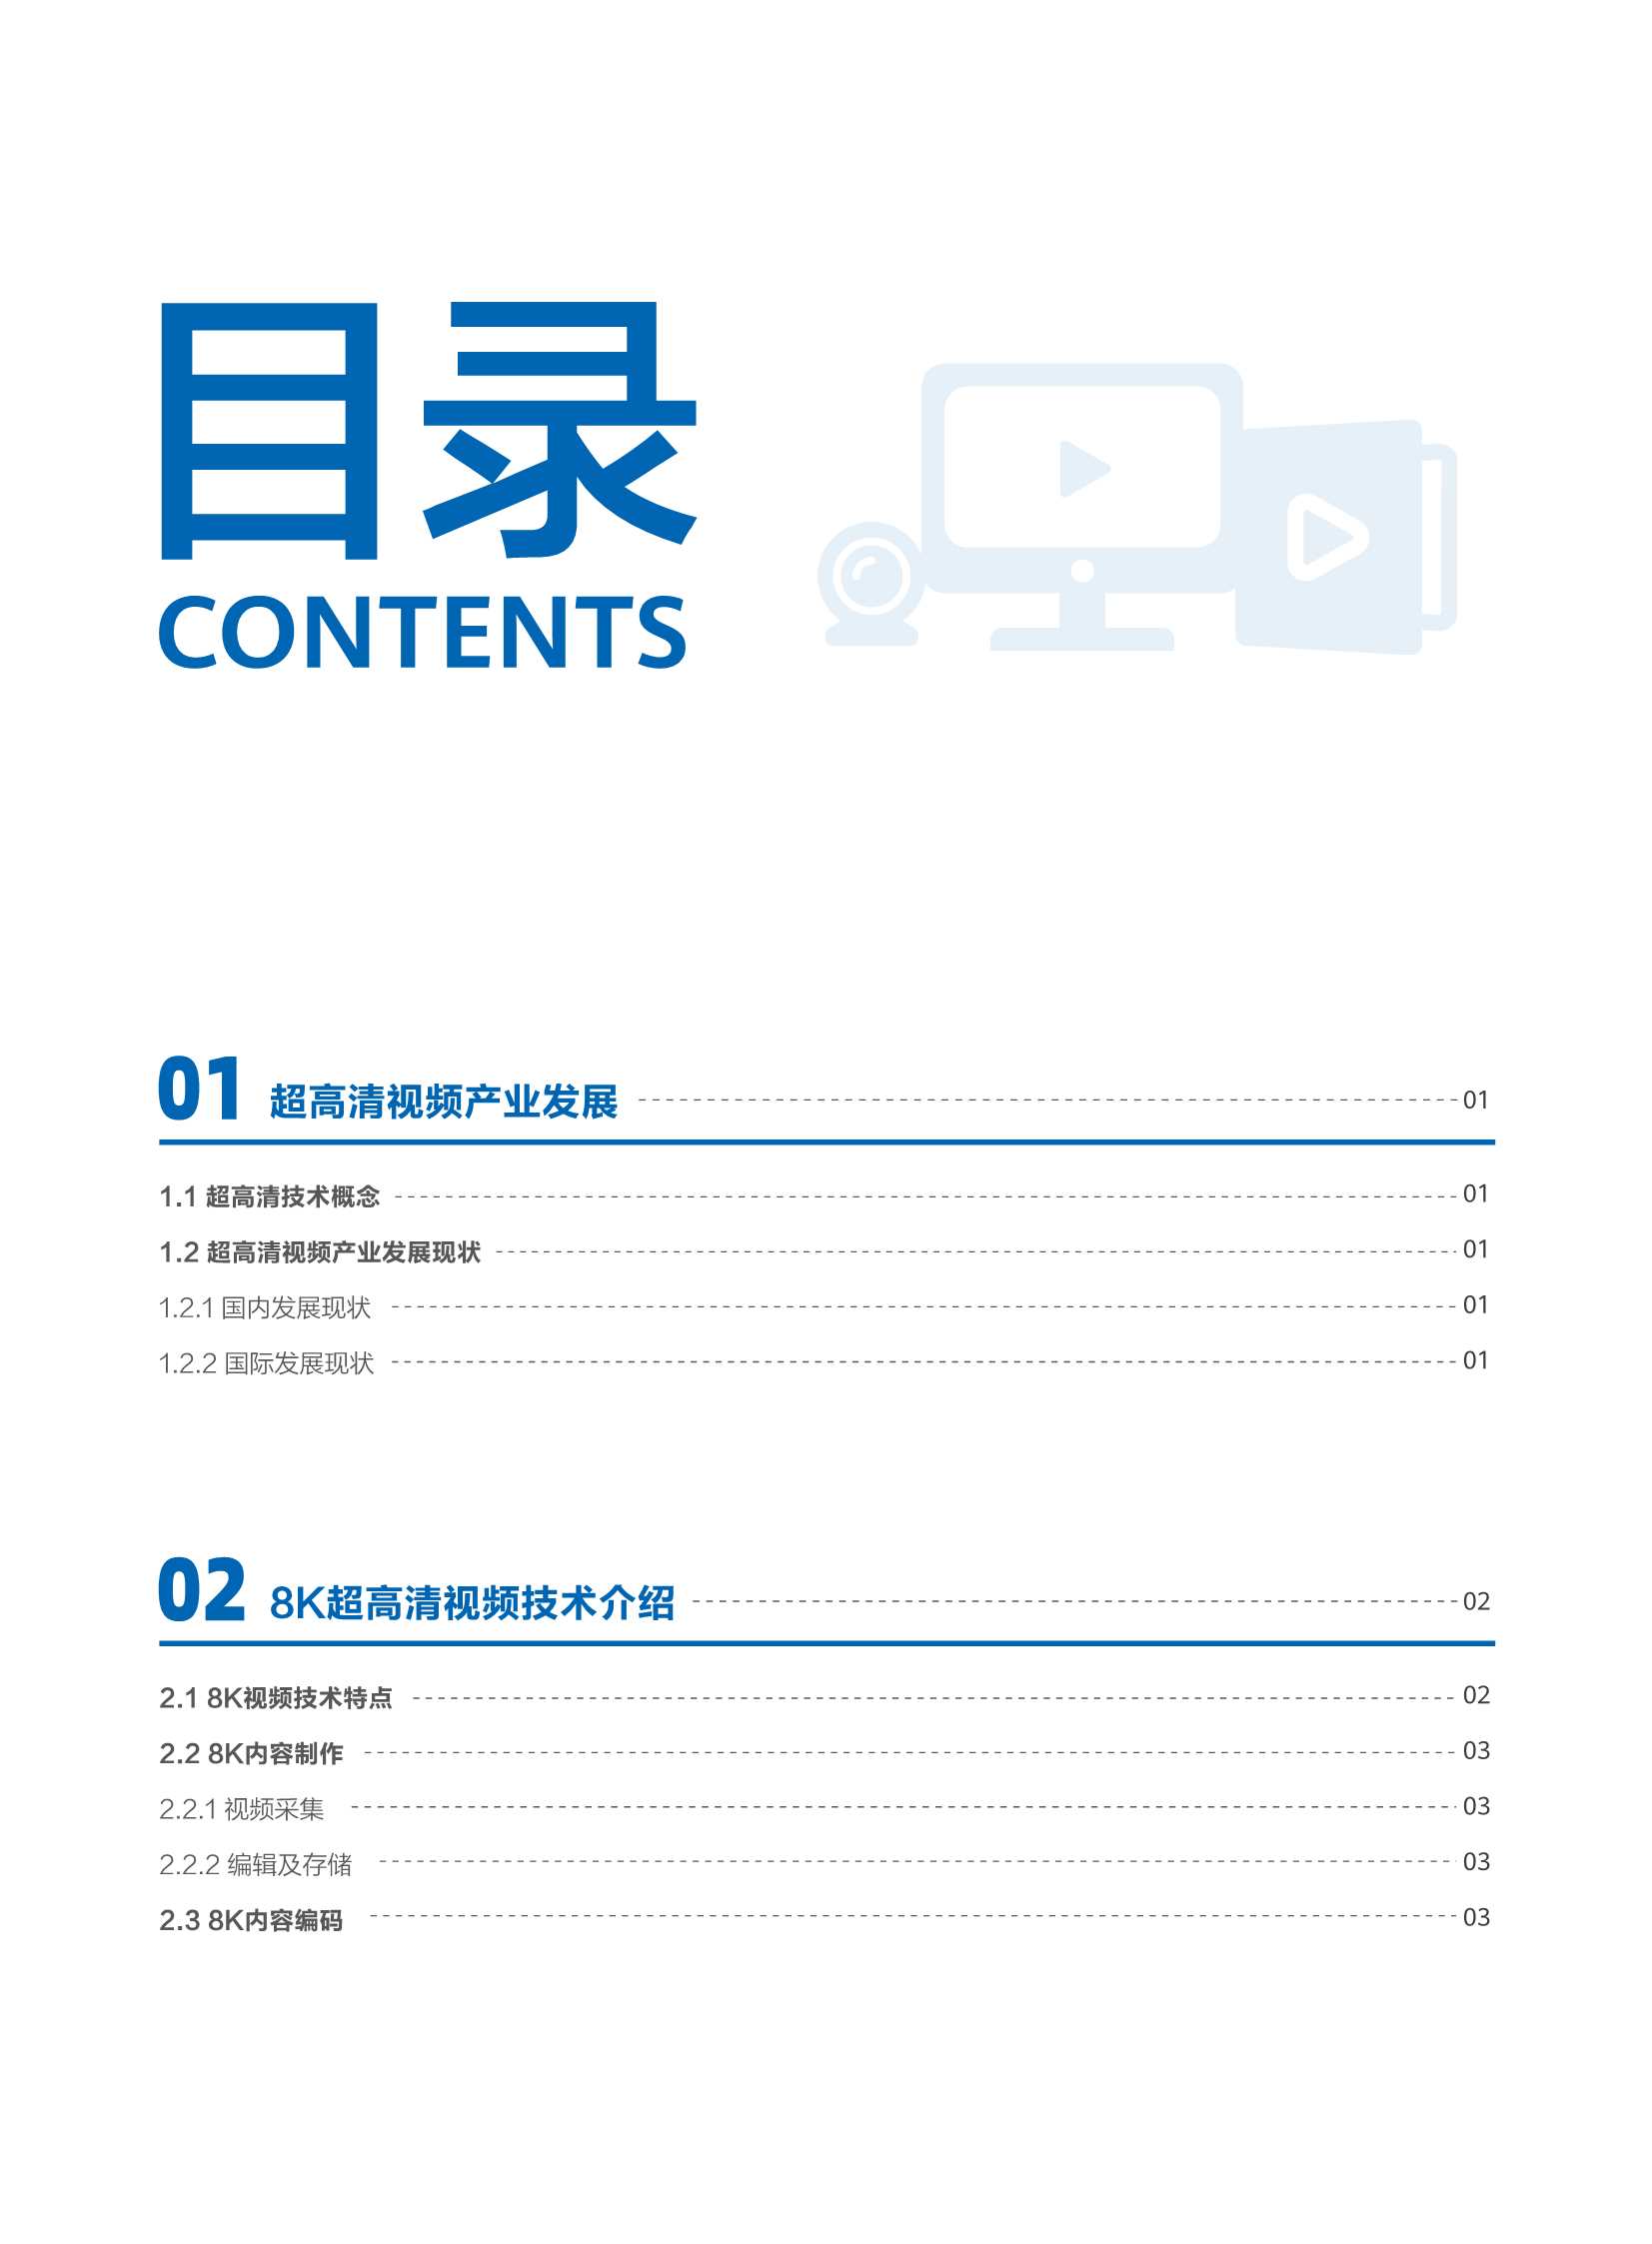 华为-8K超高清视频全光品质承载技术白皮书-2021.12-40页